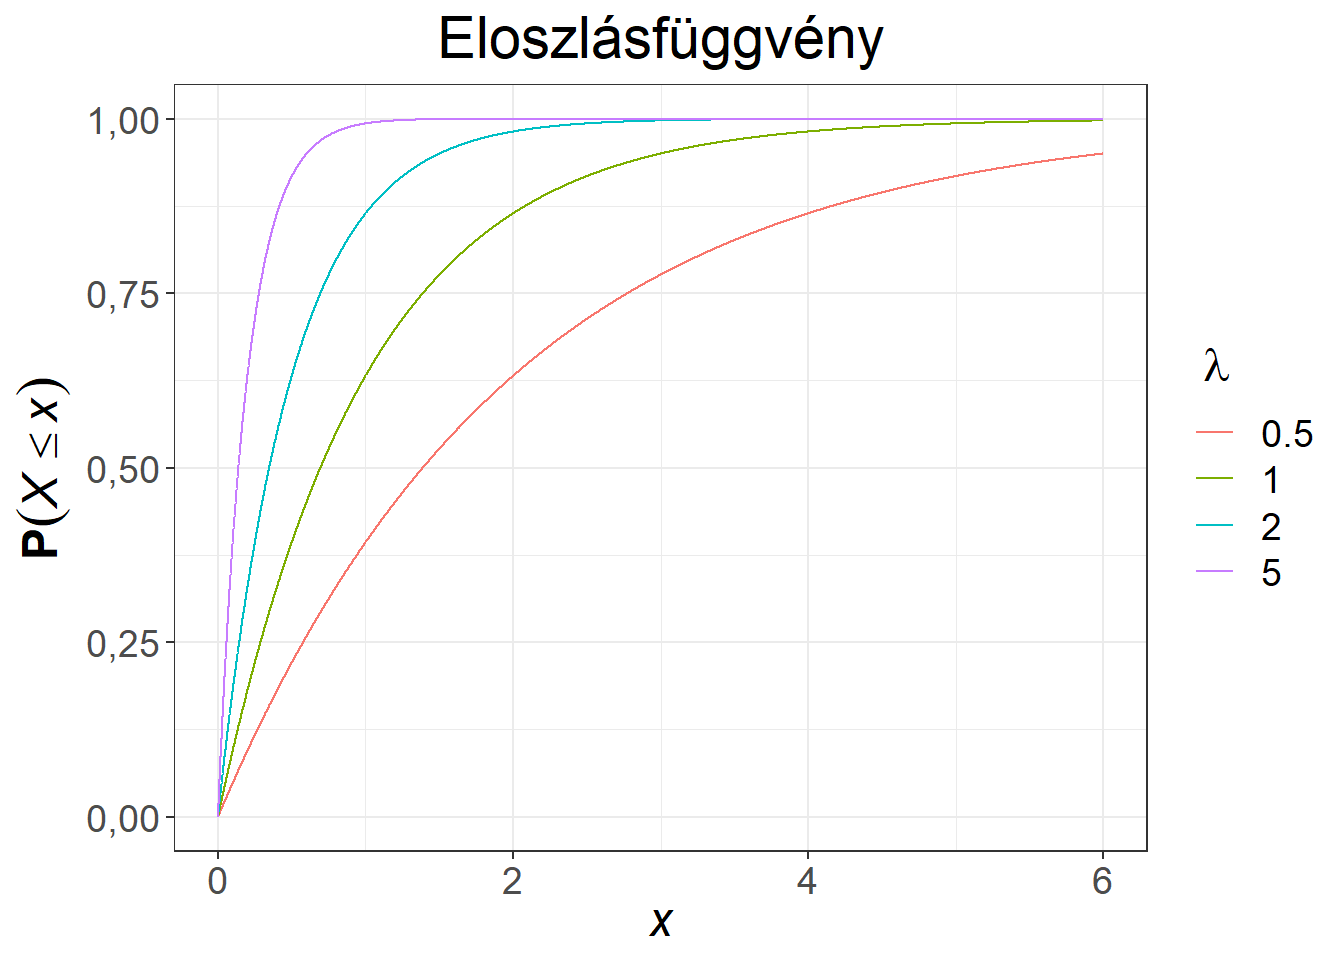 Exponenciális eloszlású változó sűrűség- és eloszlásfüggvénye